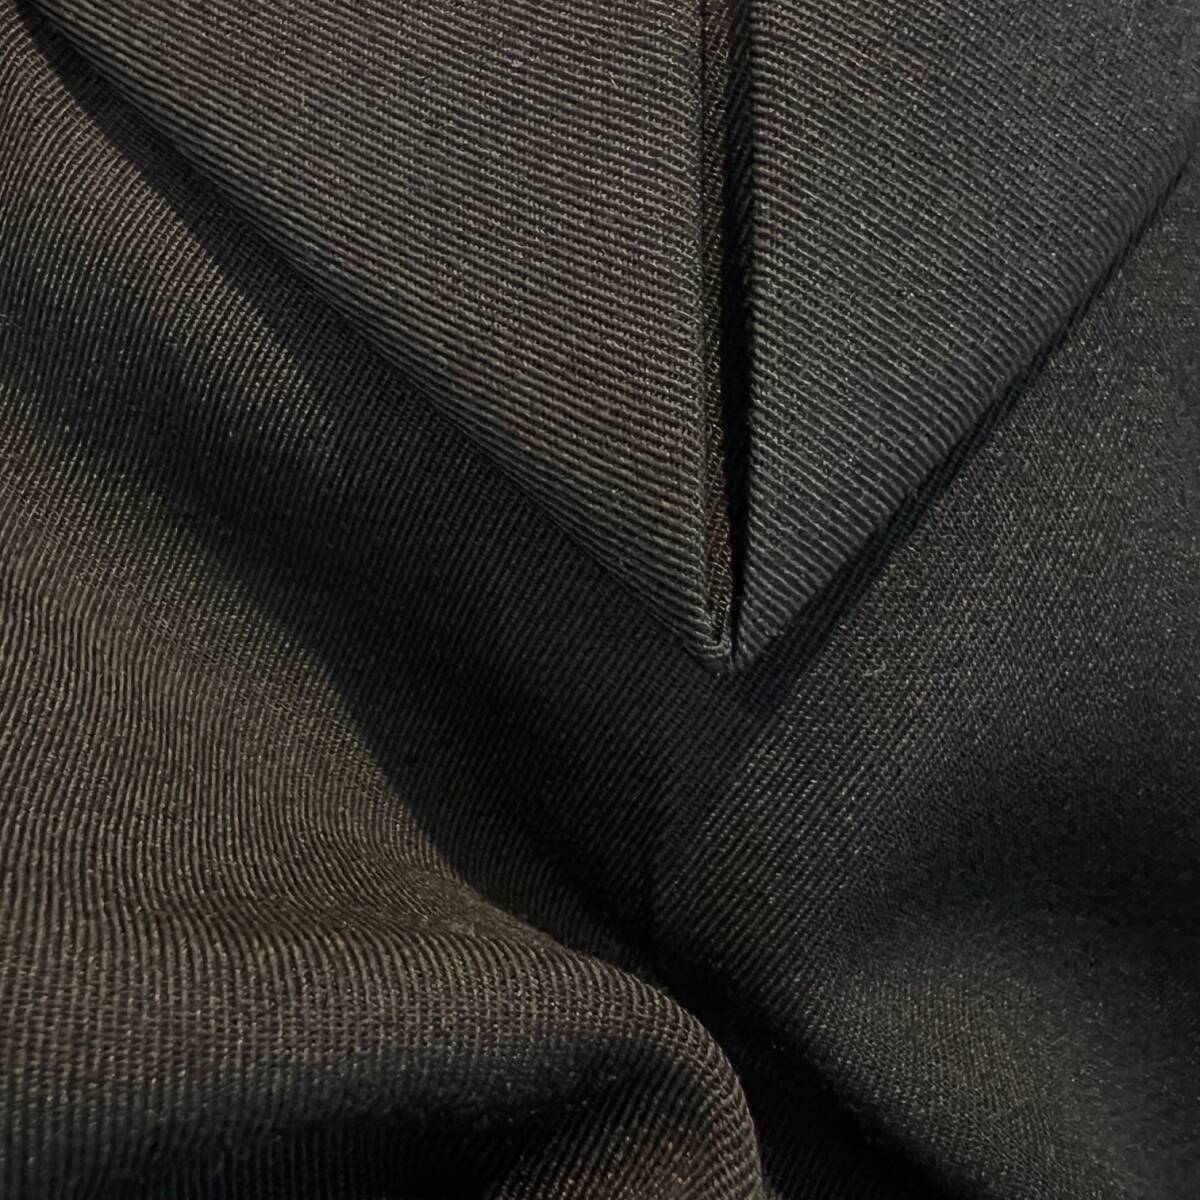 BOTTEGA VENETA ボッテガヴェネタ 2020年S/Sモデル ウール ワイドパンツ ブラック 46 ウールパンツ 黒 ダニエルリーの画像3